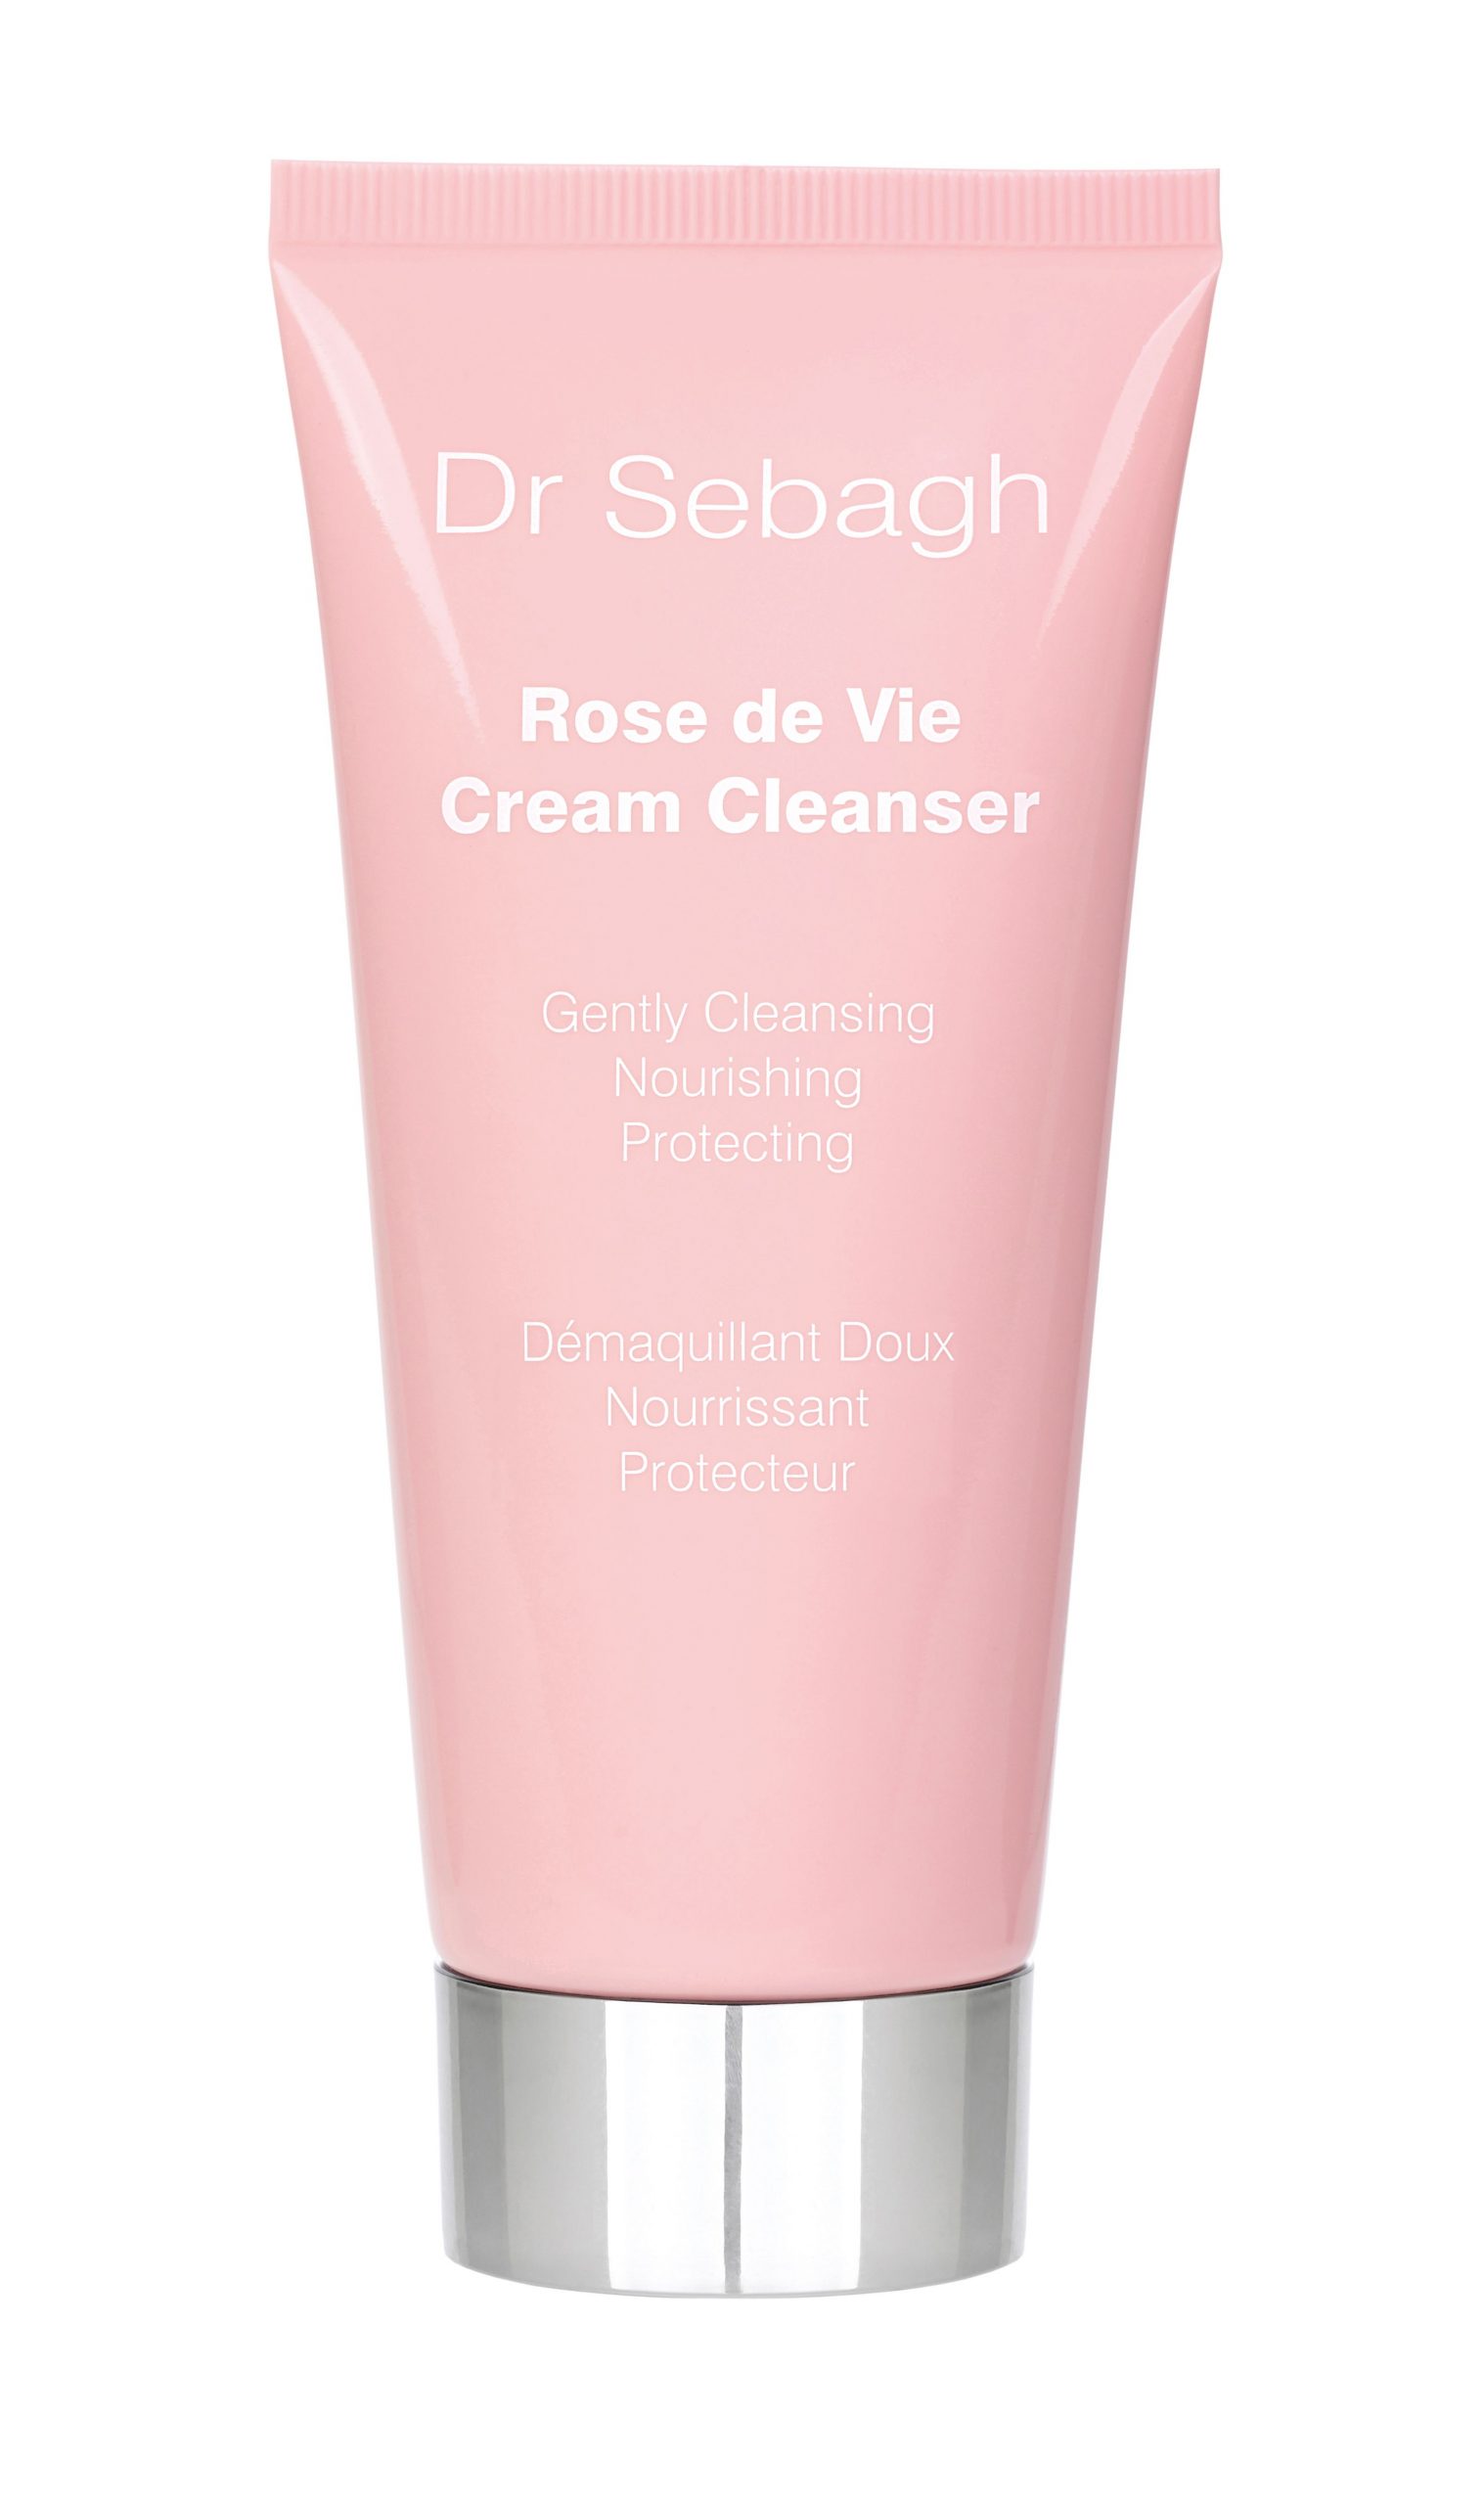 Rose de Vie Cream Cleanser